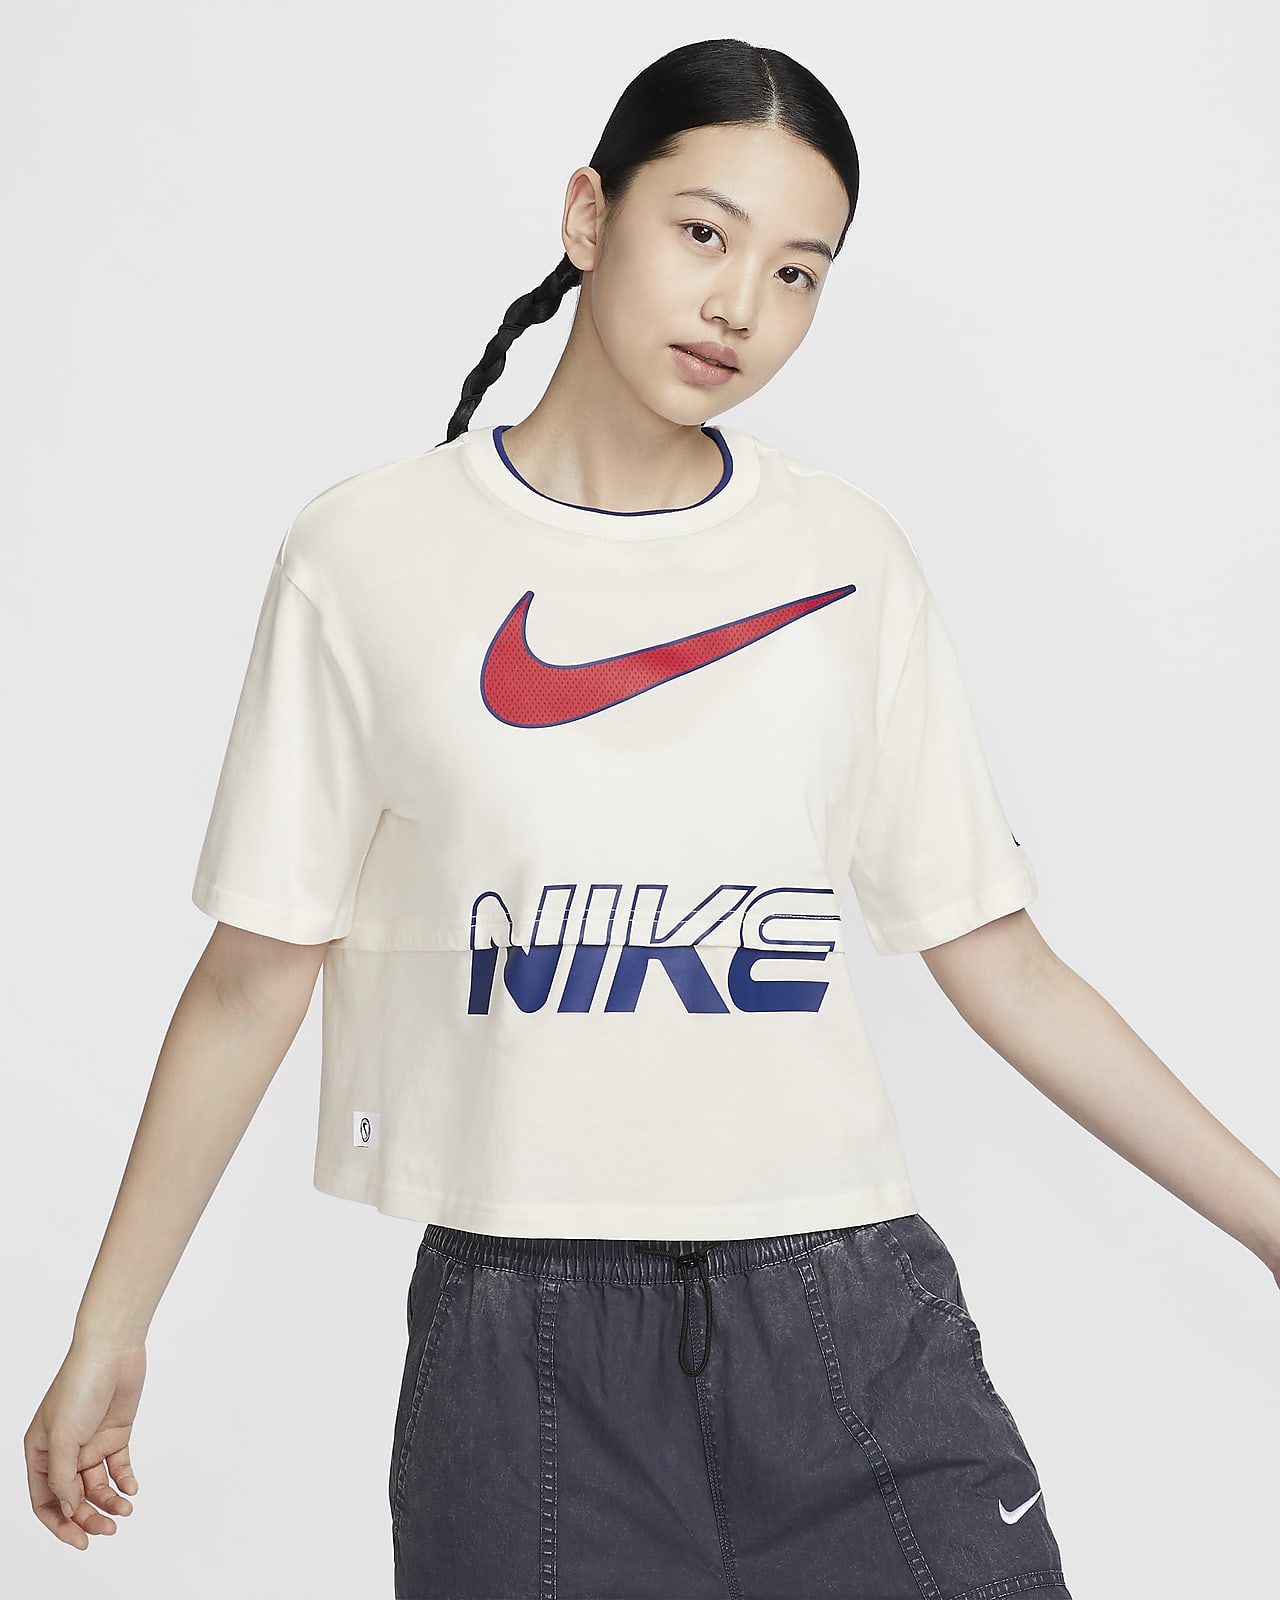 Nike Sportswear Women's Short-Sleeve Top